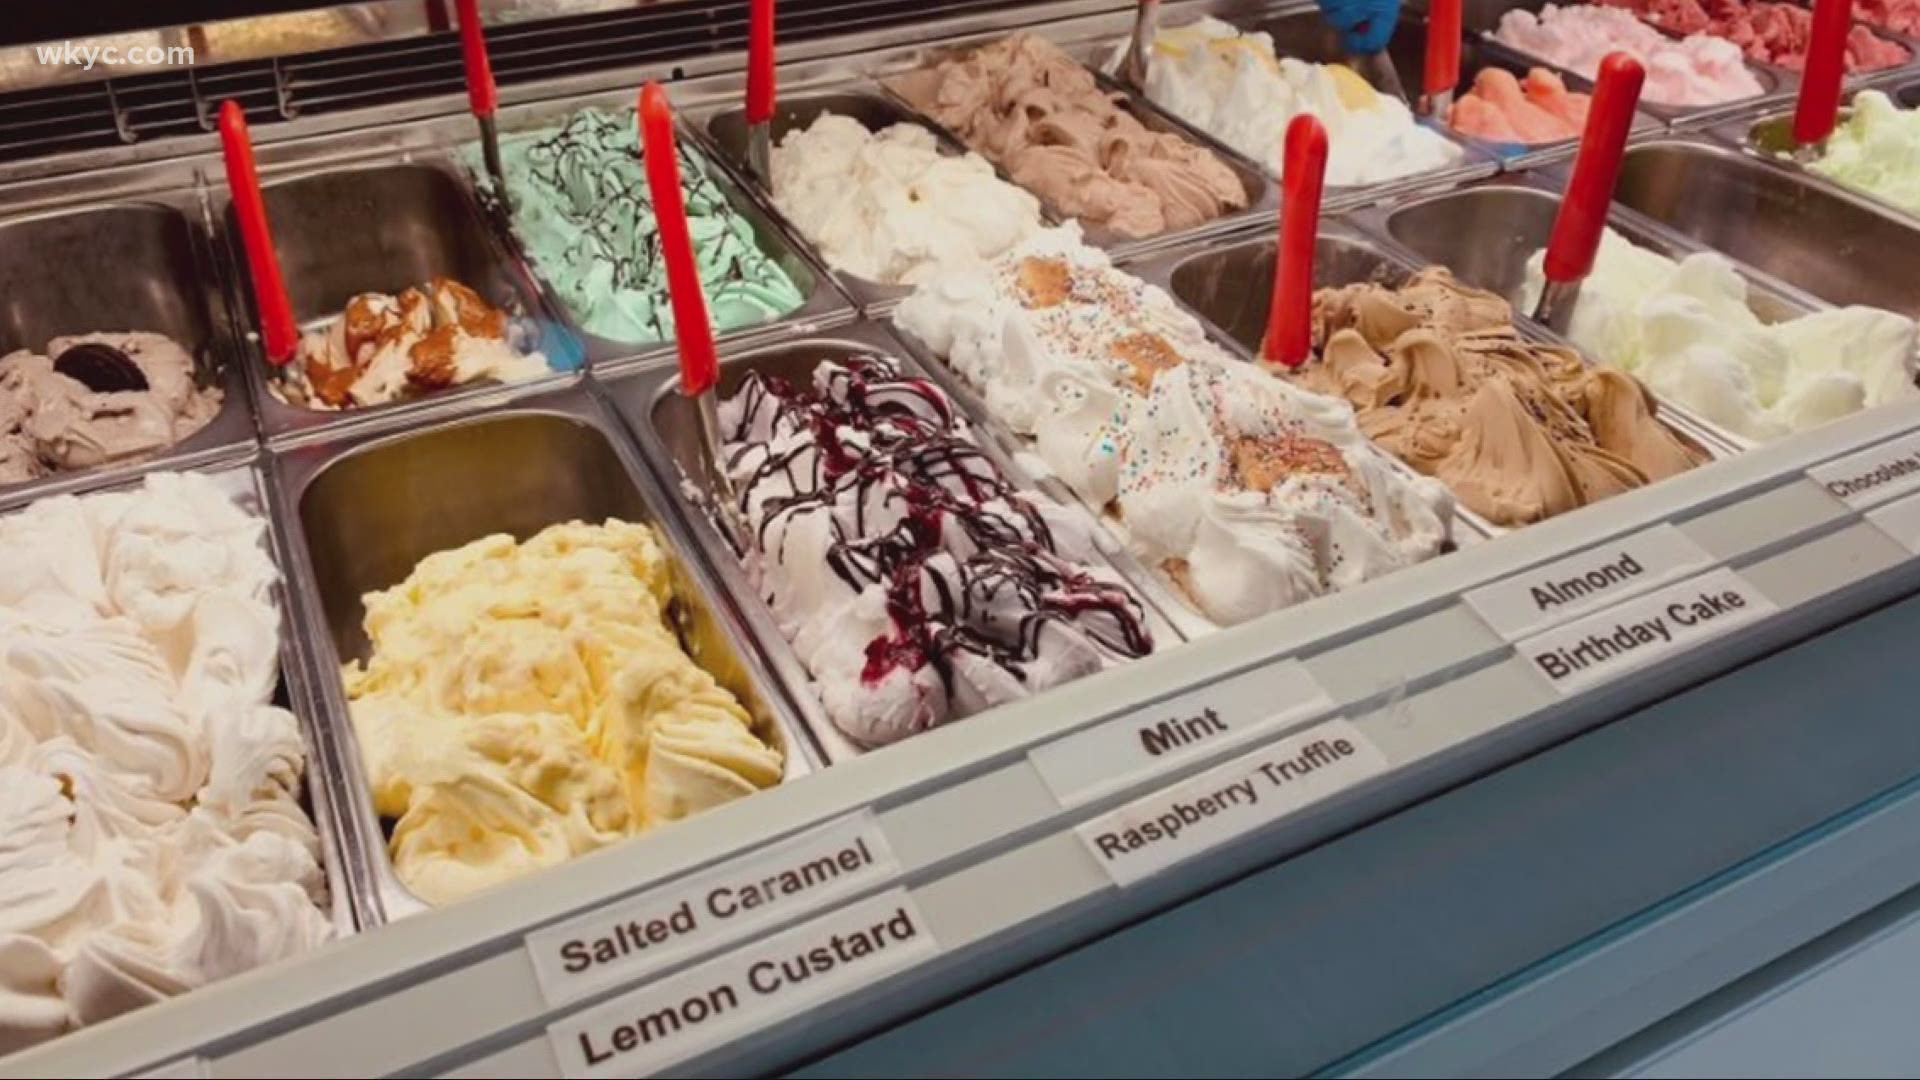 CLOSED: Mitchell's Ice Cream - Strongsville Ohio Ice Cream - HappyCow